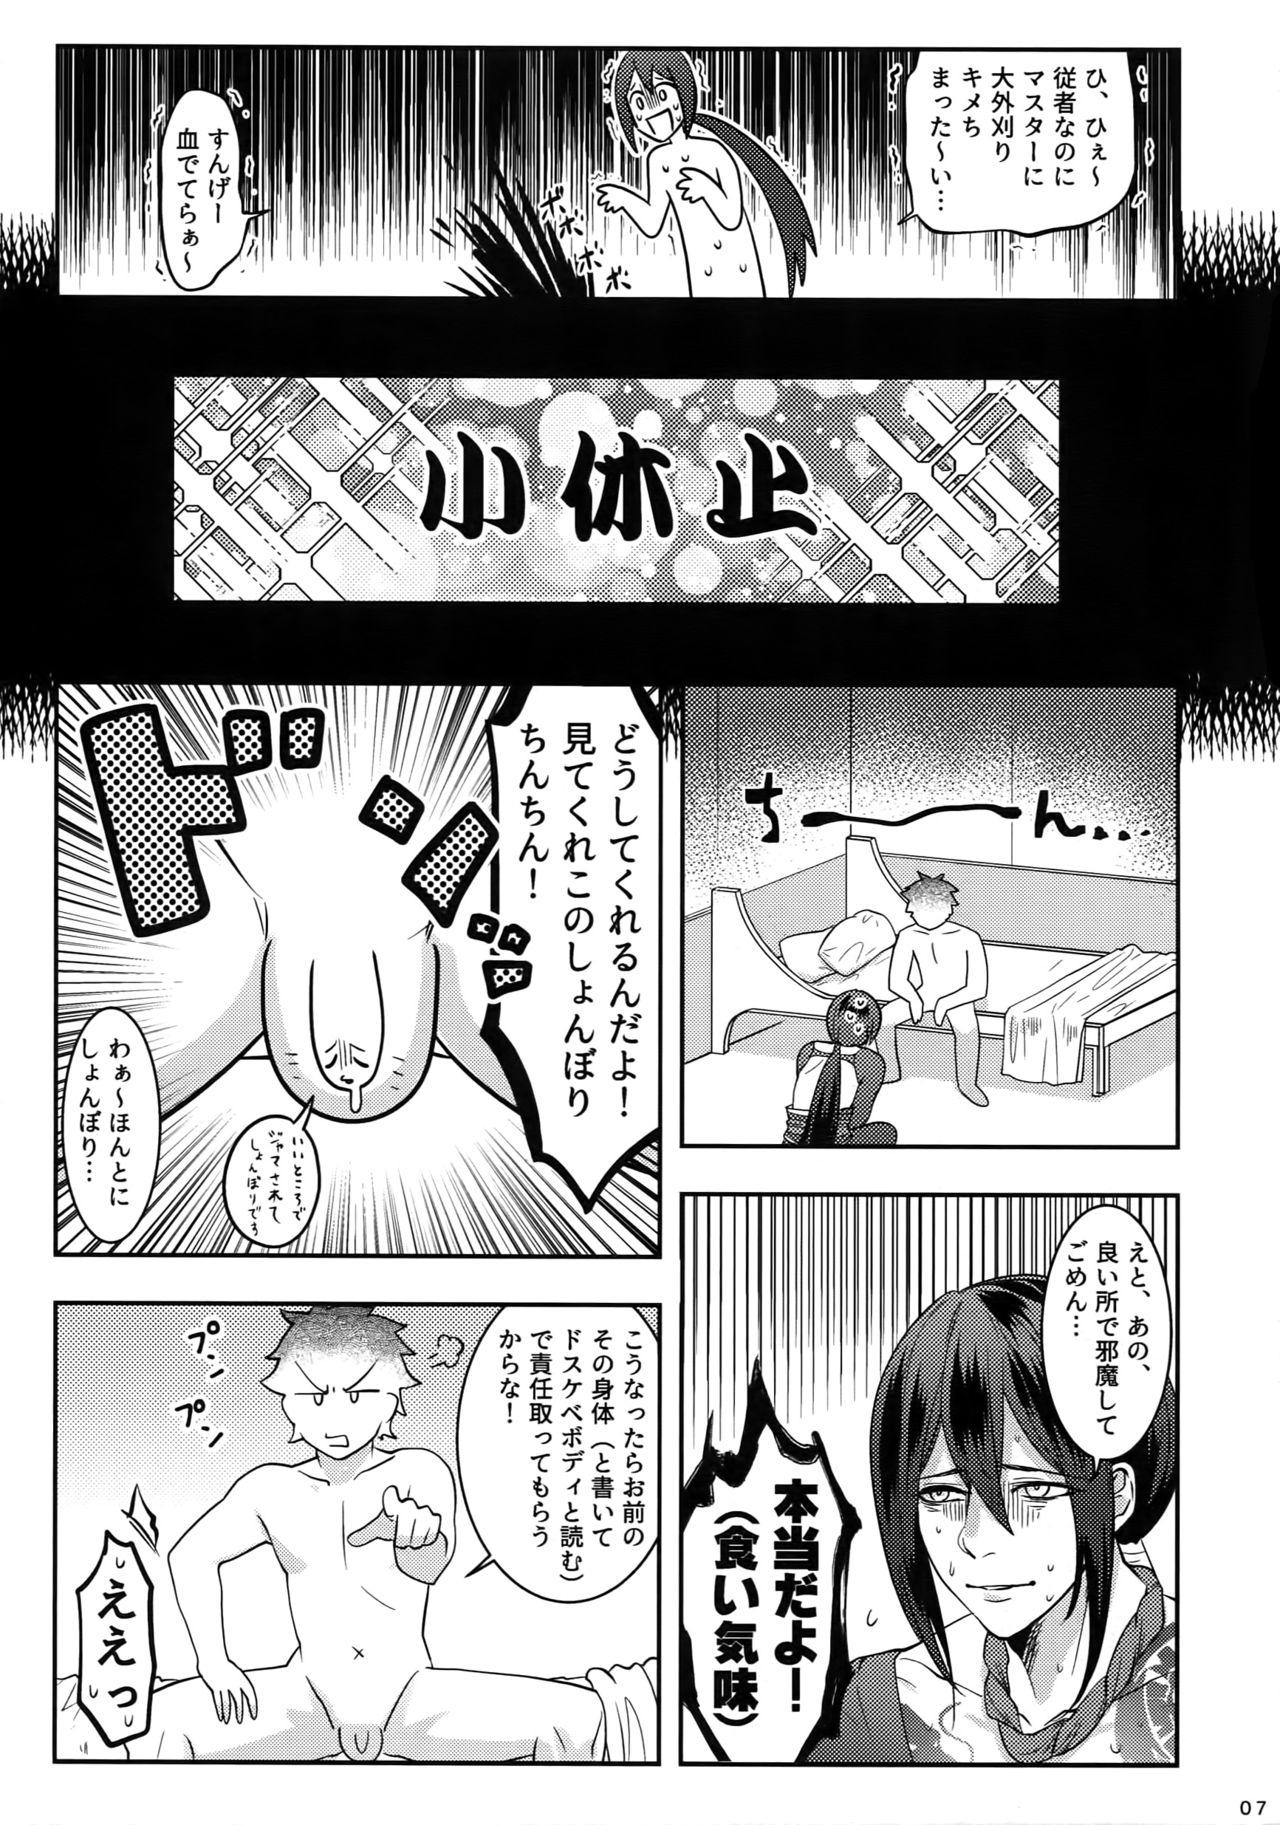 Moan Reiju no Mudazukai! Yarasete Kure Shinjuku no Assassin! - Fate grand order Teacher - Page 6